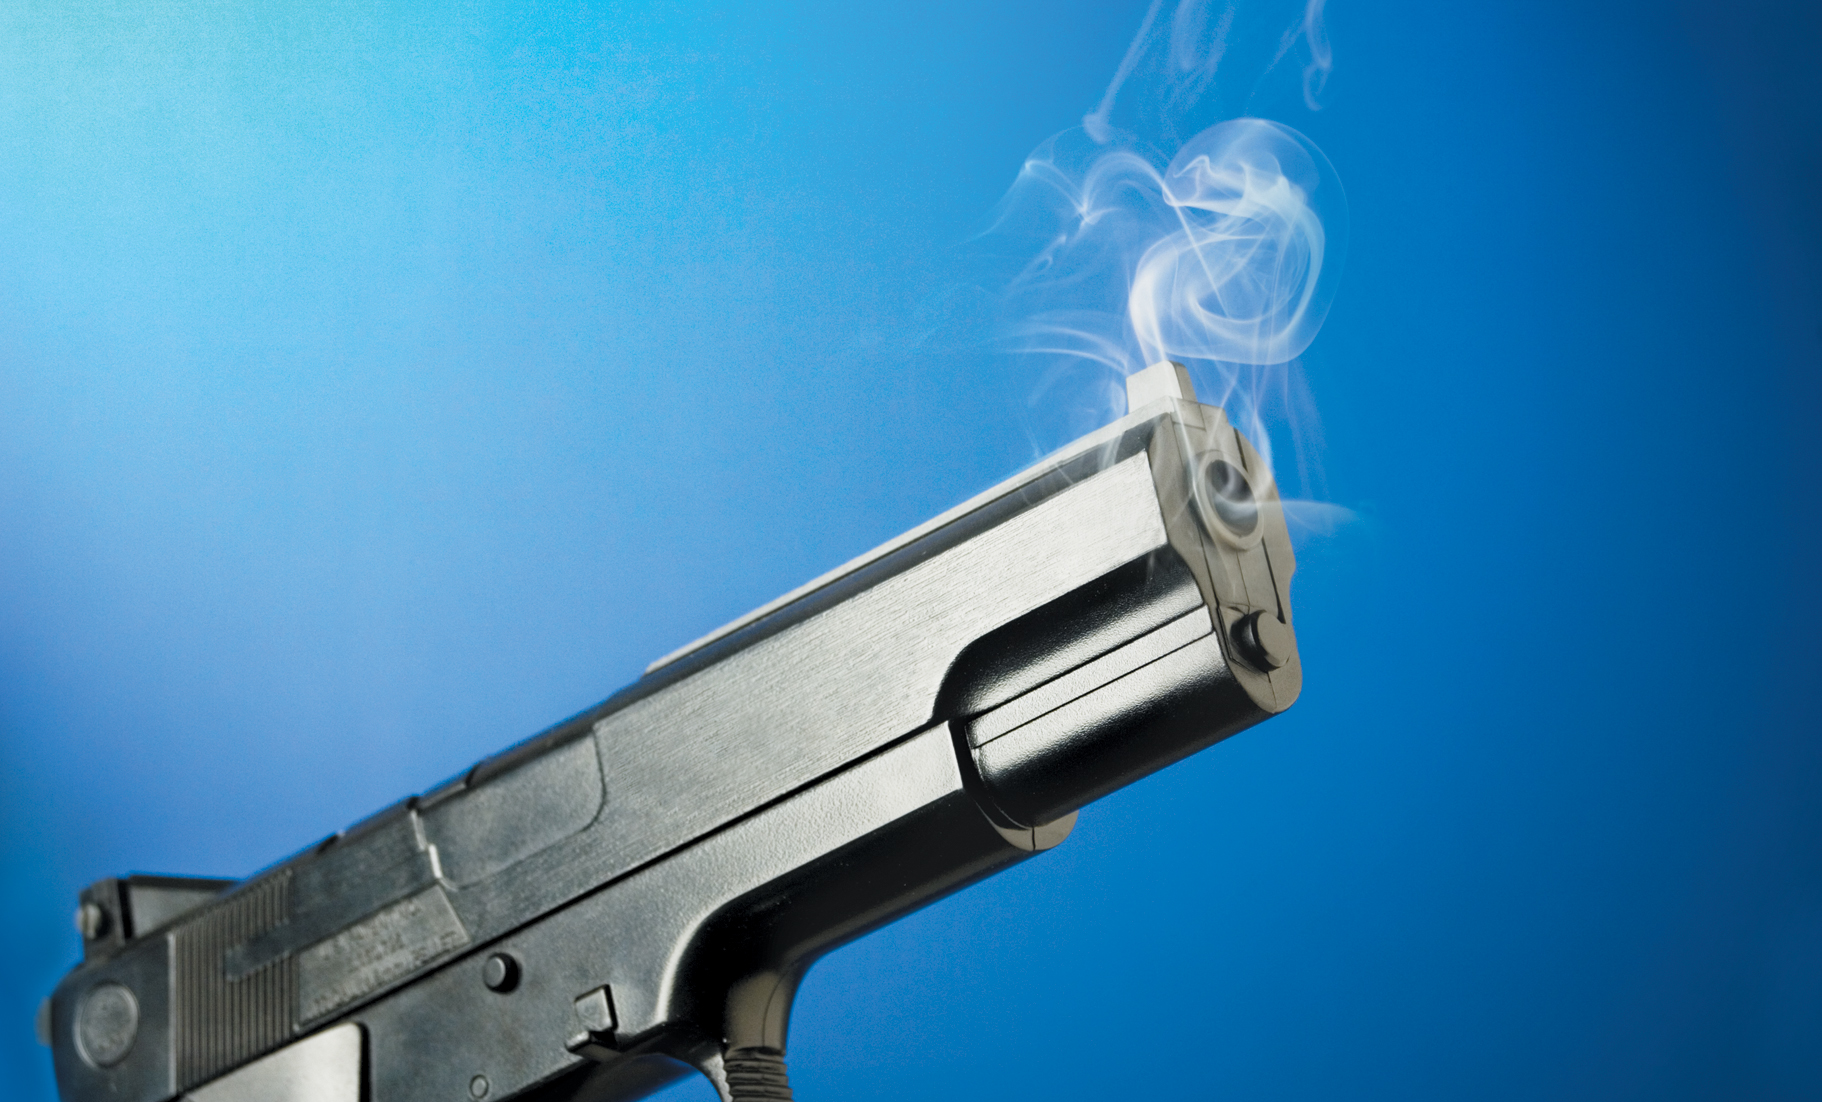 Moran takes second shot at gun control legislation